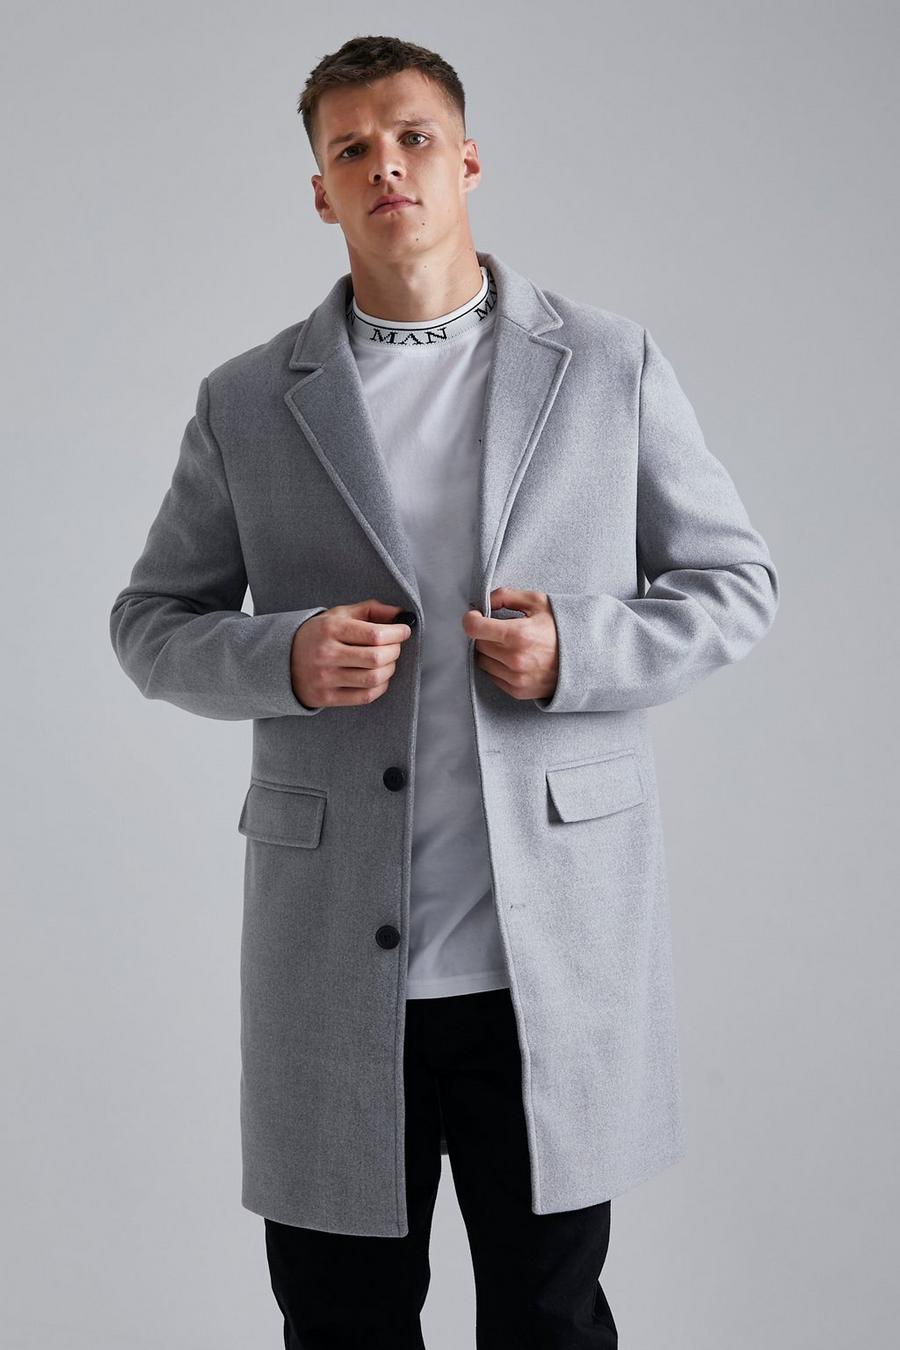 אפור grigio מעיל עליון במראה צמר עם רכיסה אחת, לגברים גבוהים